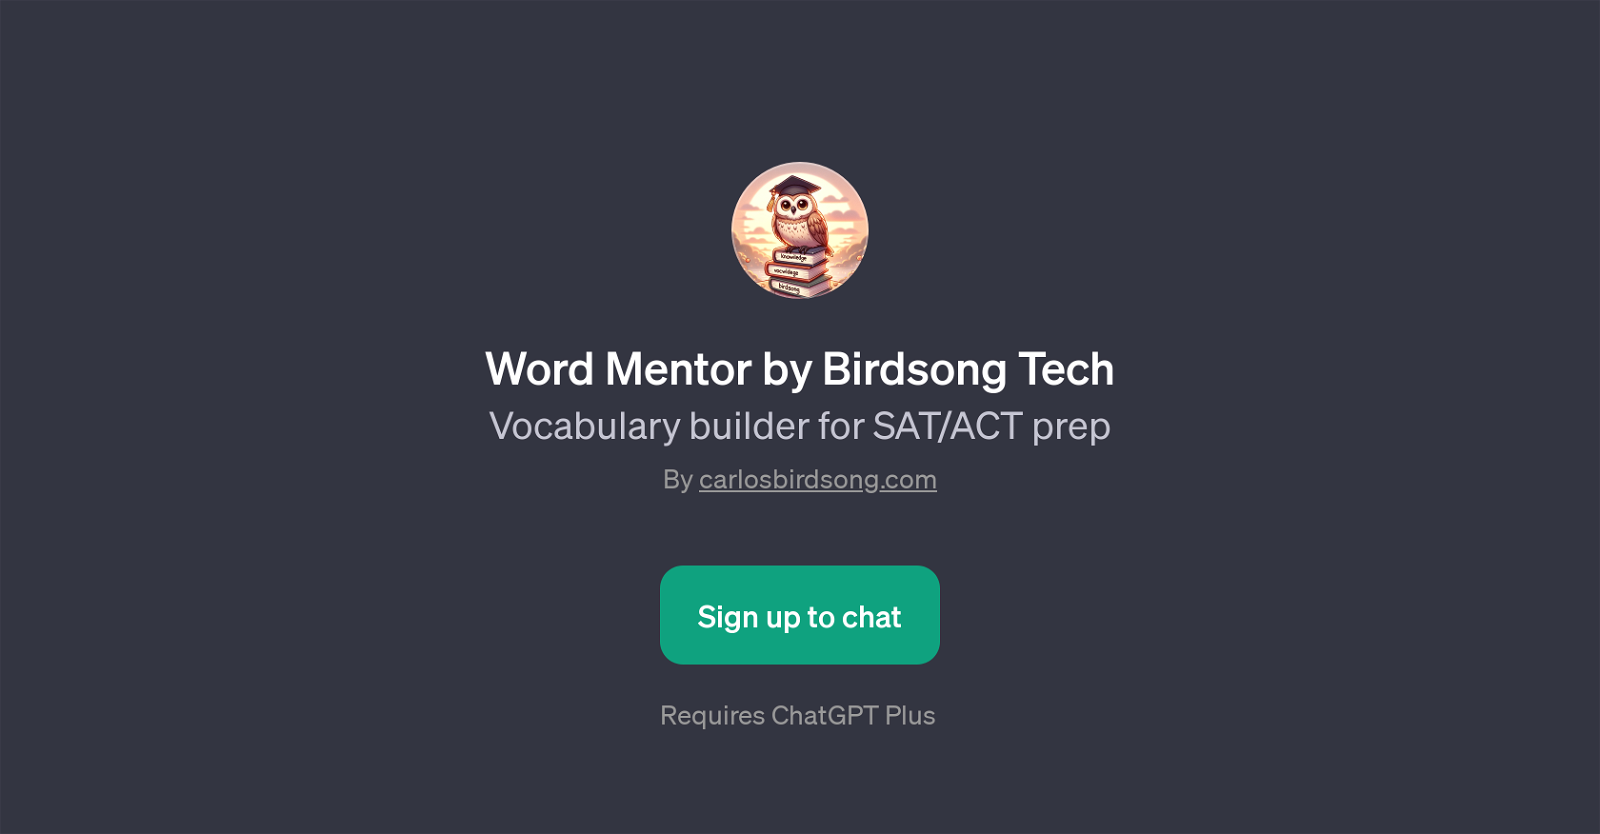 Word Mentor by Birdsong Tech website